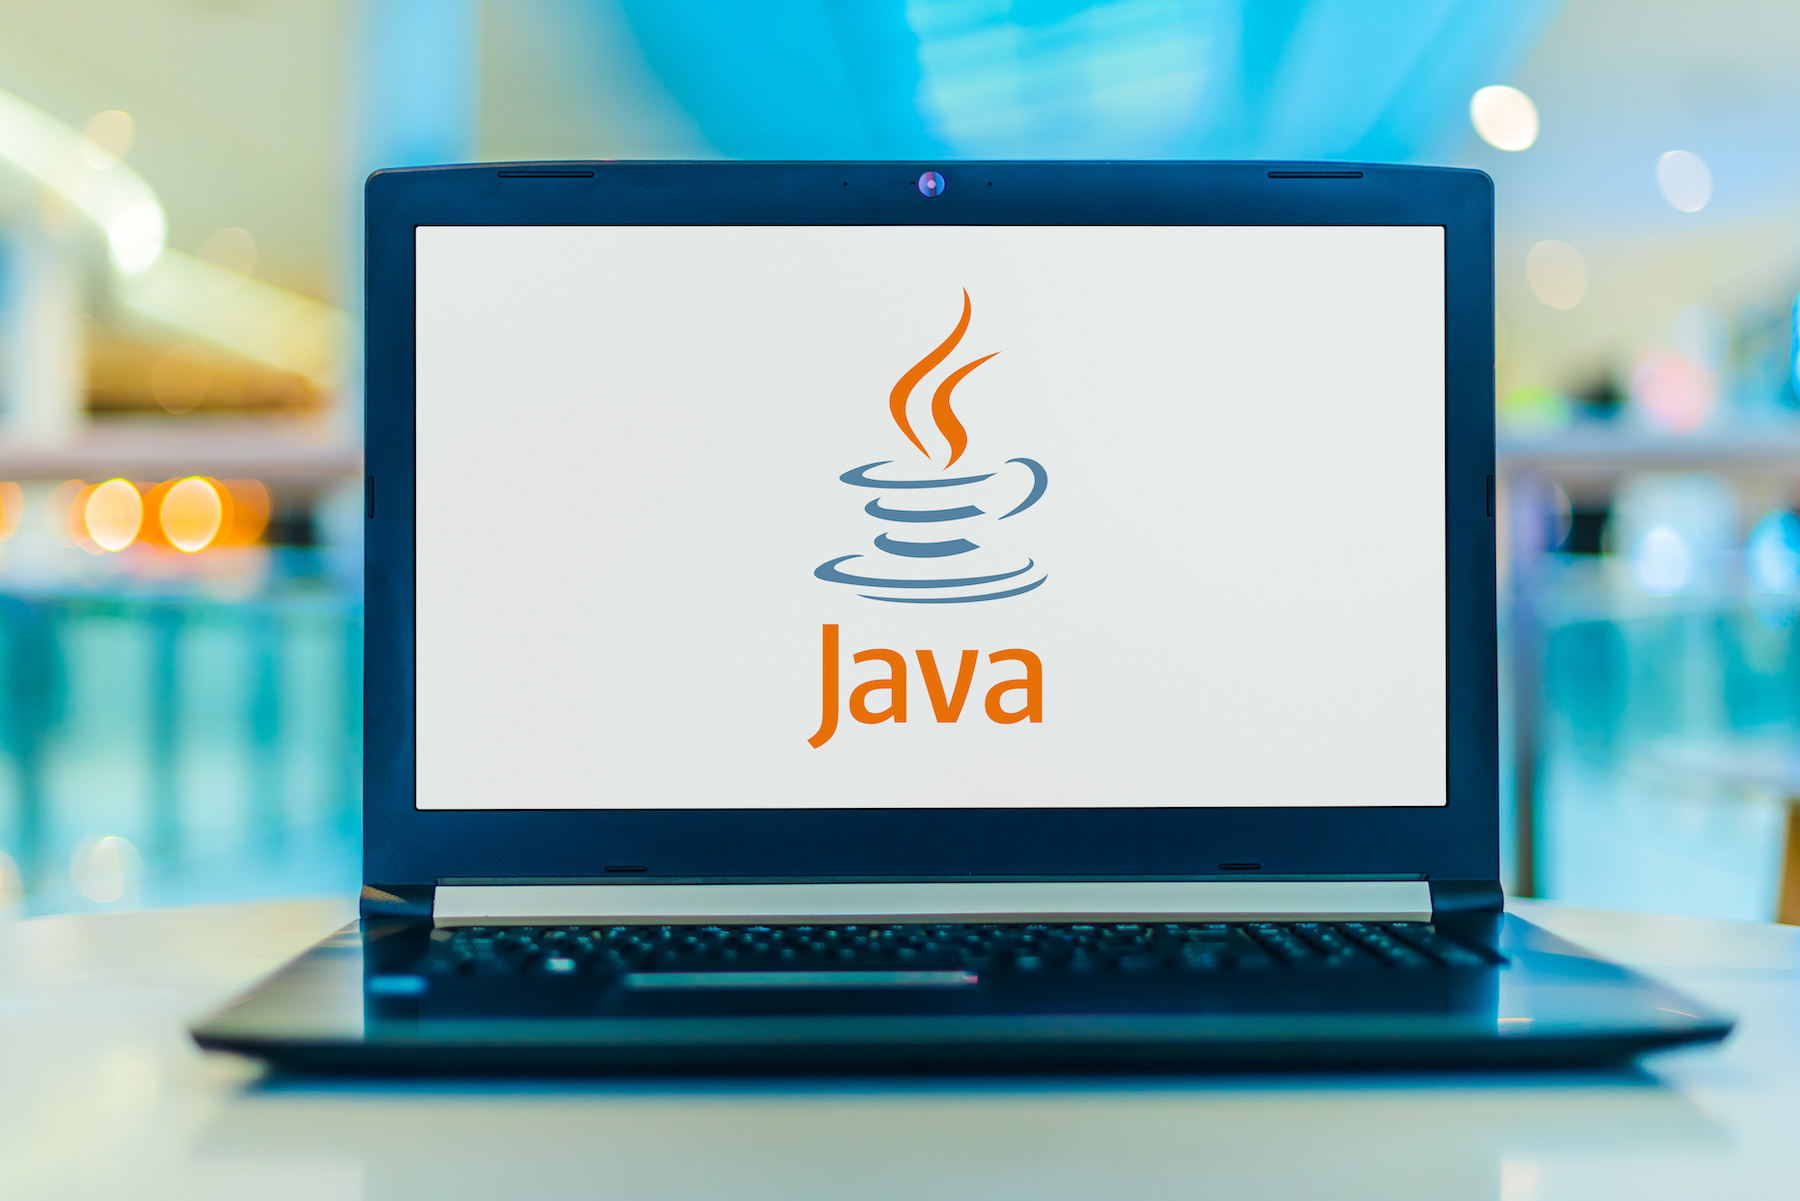 Le langage Java est un des plus populaires pour la création d’applications et de logiciels. © monticellllo, Adobe Stock